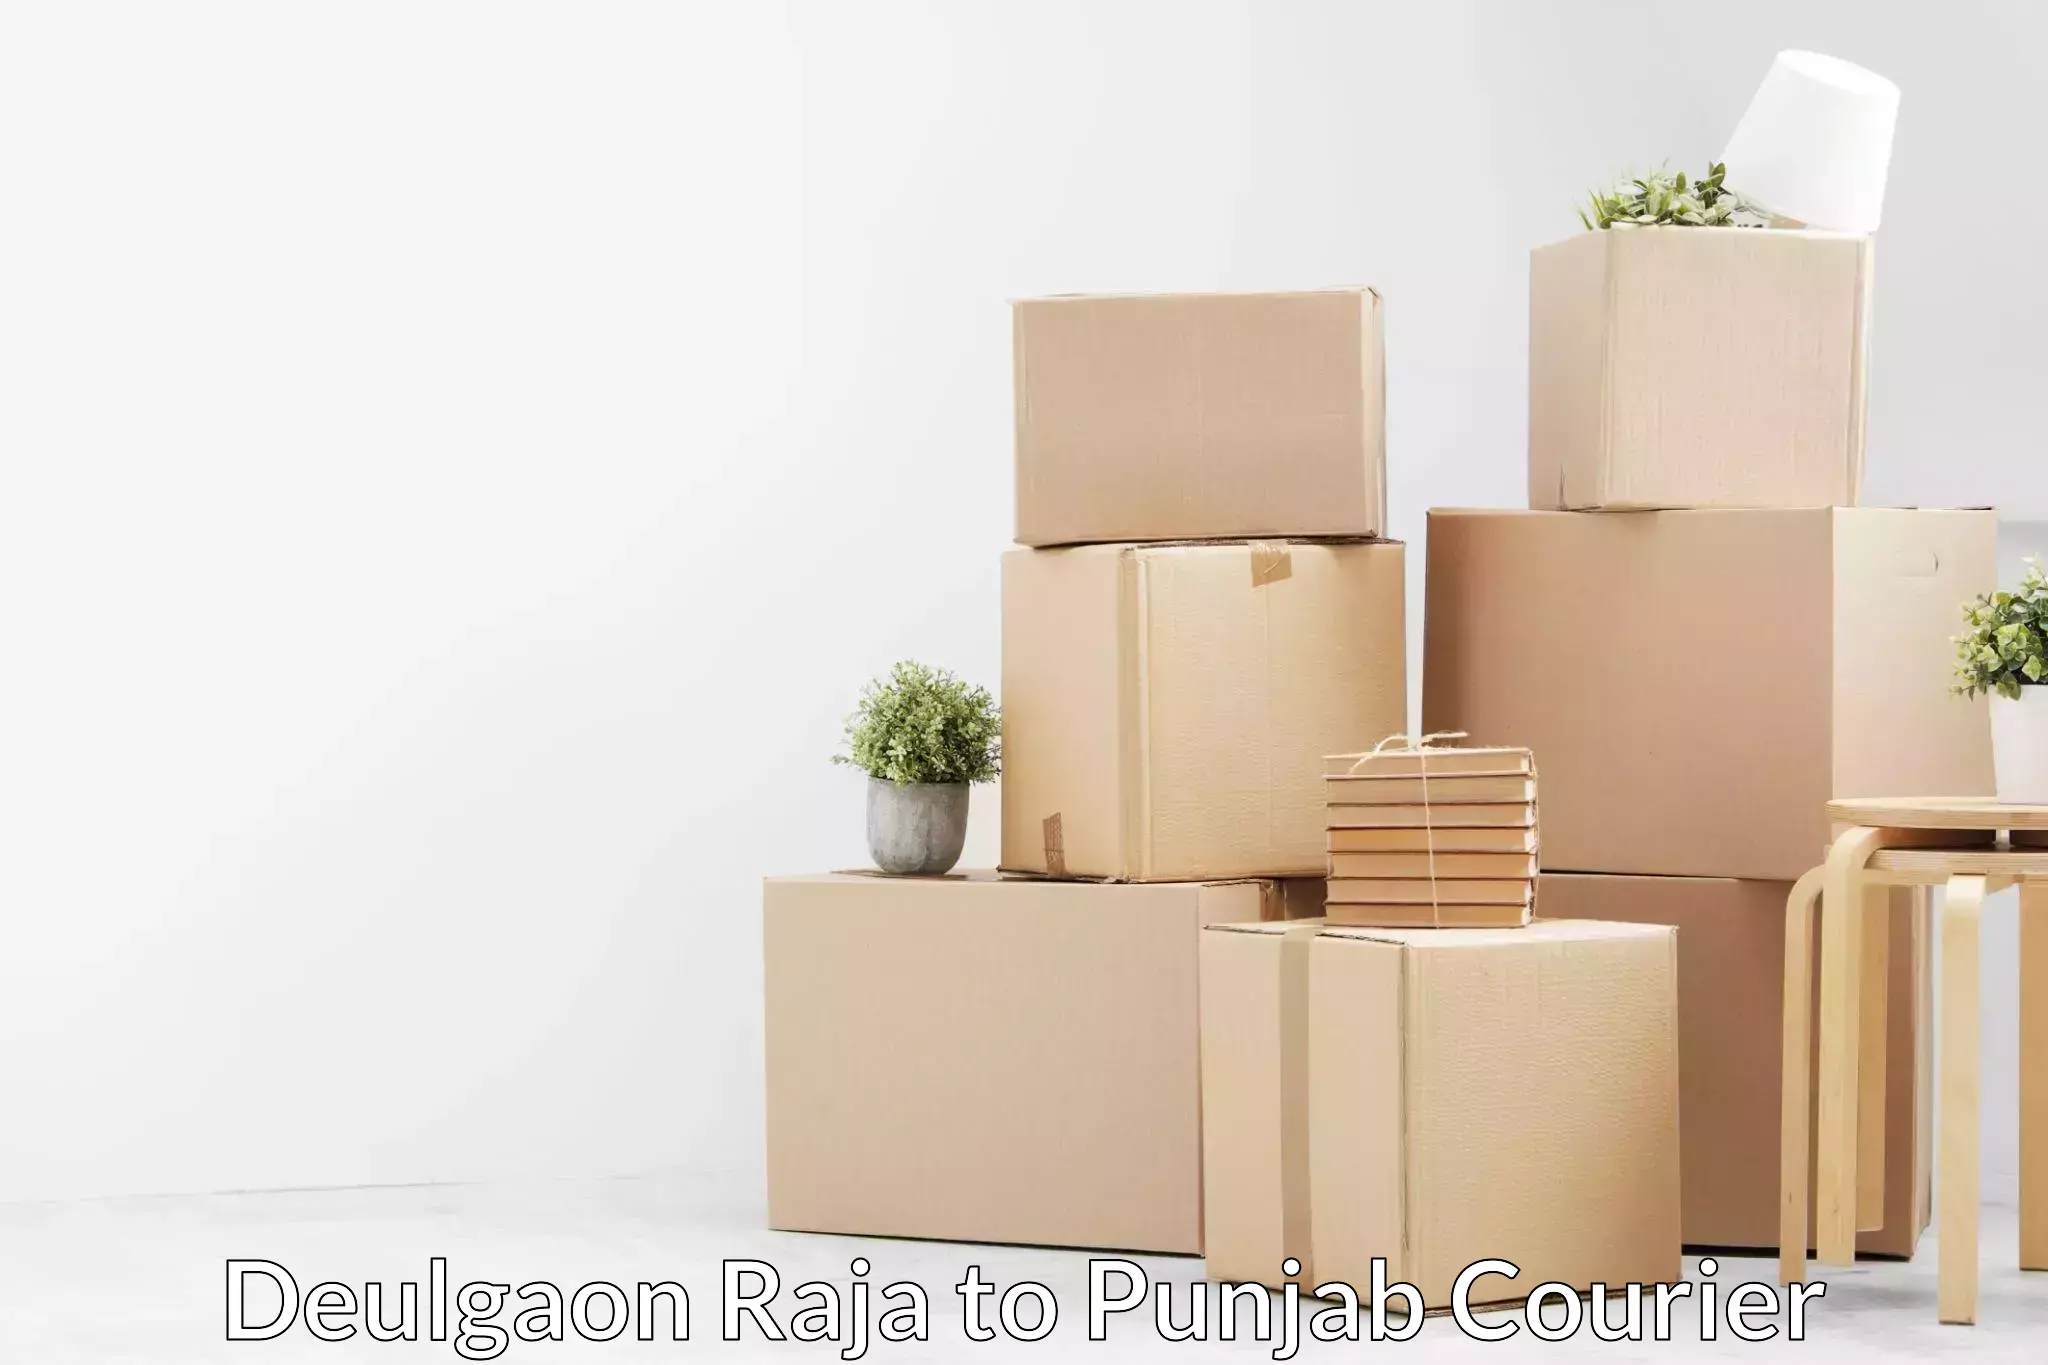 Furniture shipping services Deulgaon Raja to Punjab